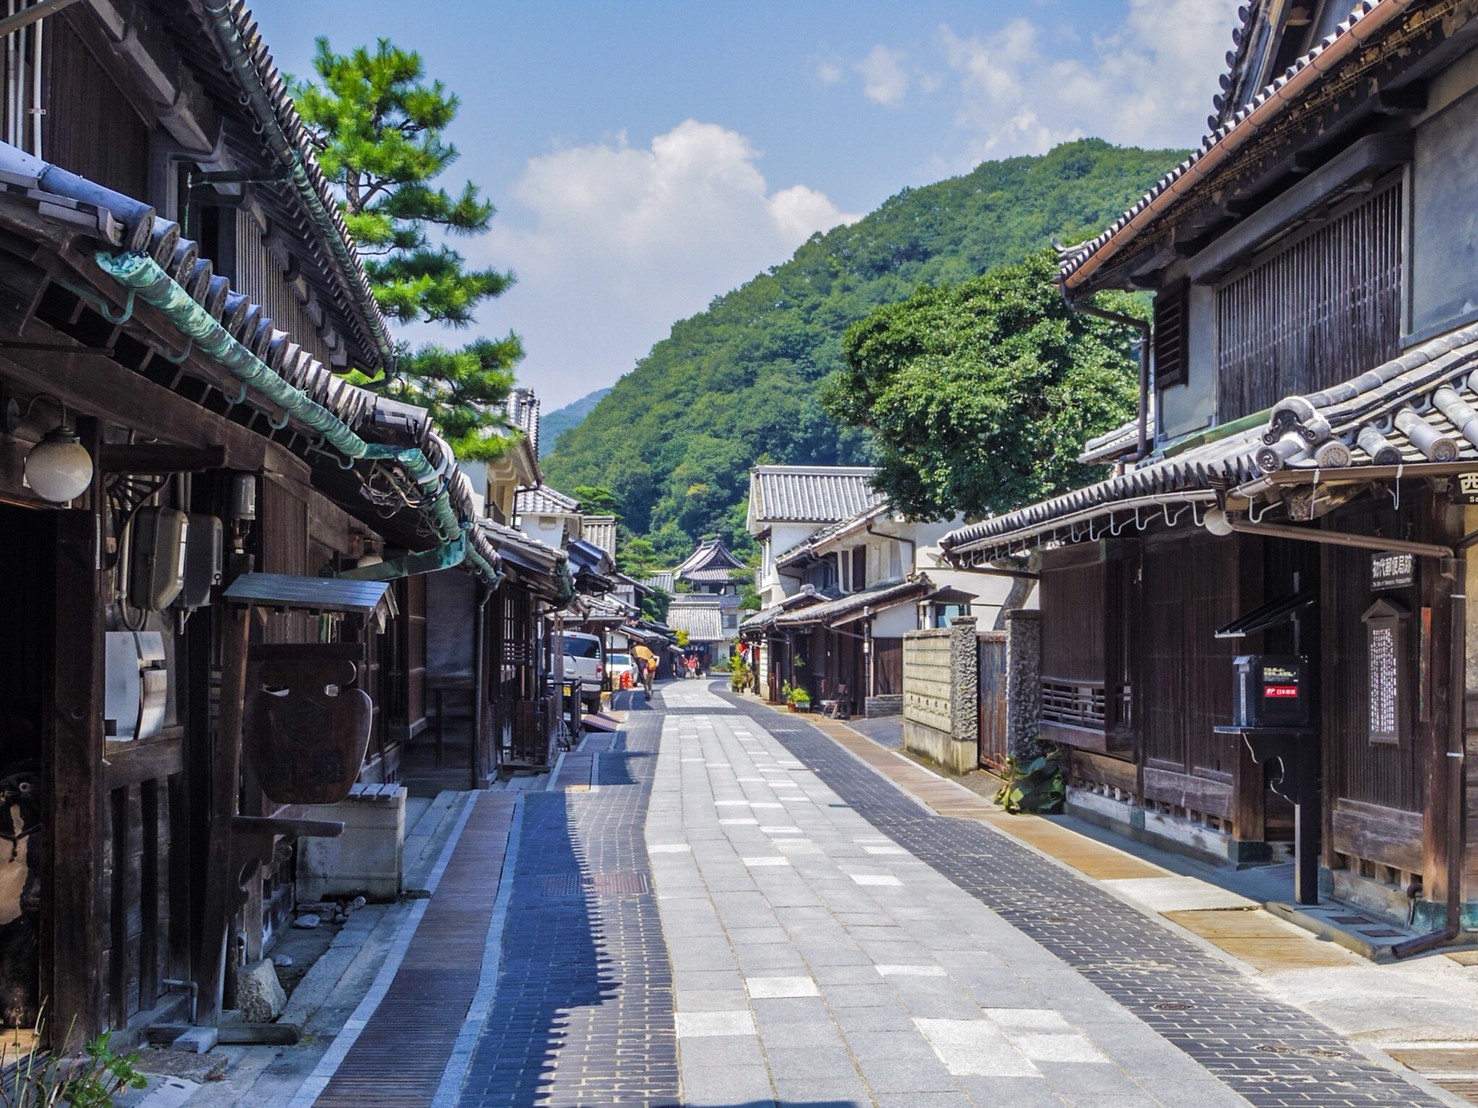 10 Best Historical Sites in Japan | Japan Wonder Travel Blog